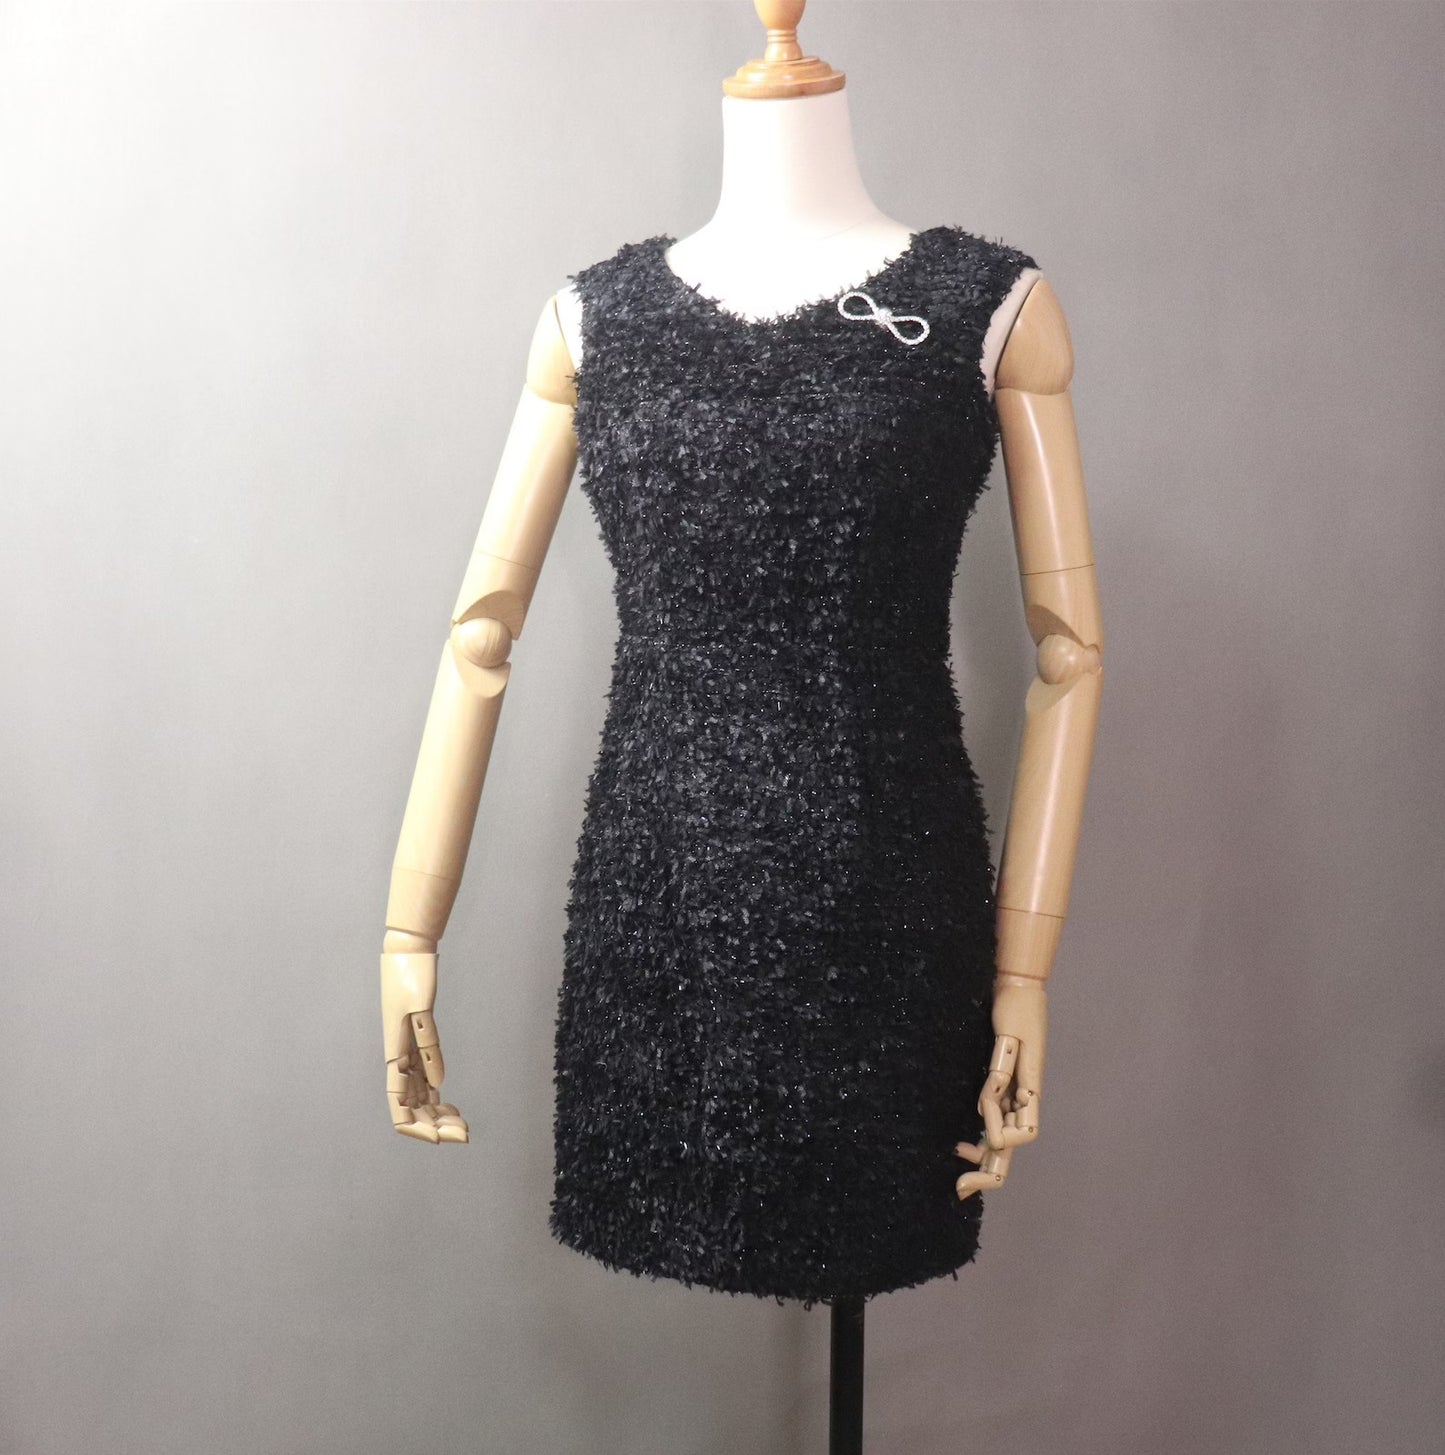 Women Custom Made Bow Decoration Tweed Sheath Dress Black - Fashion Pioneer 